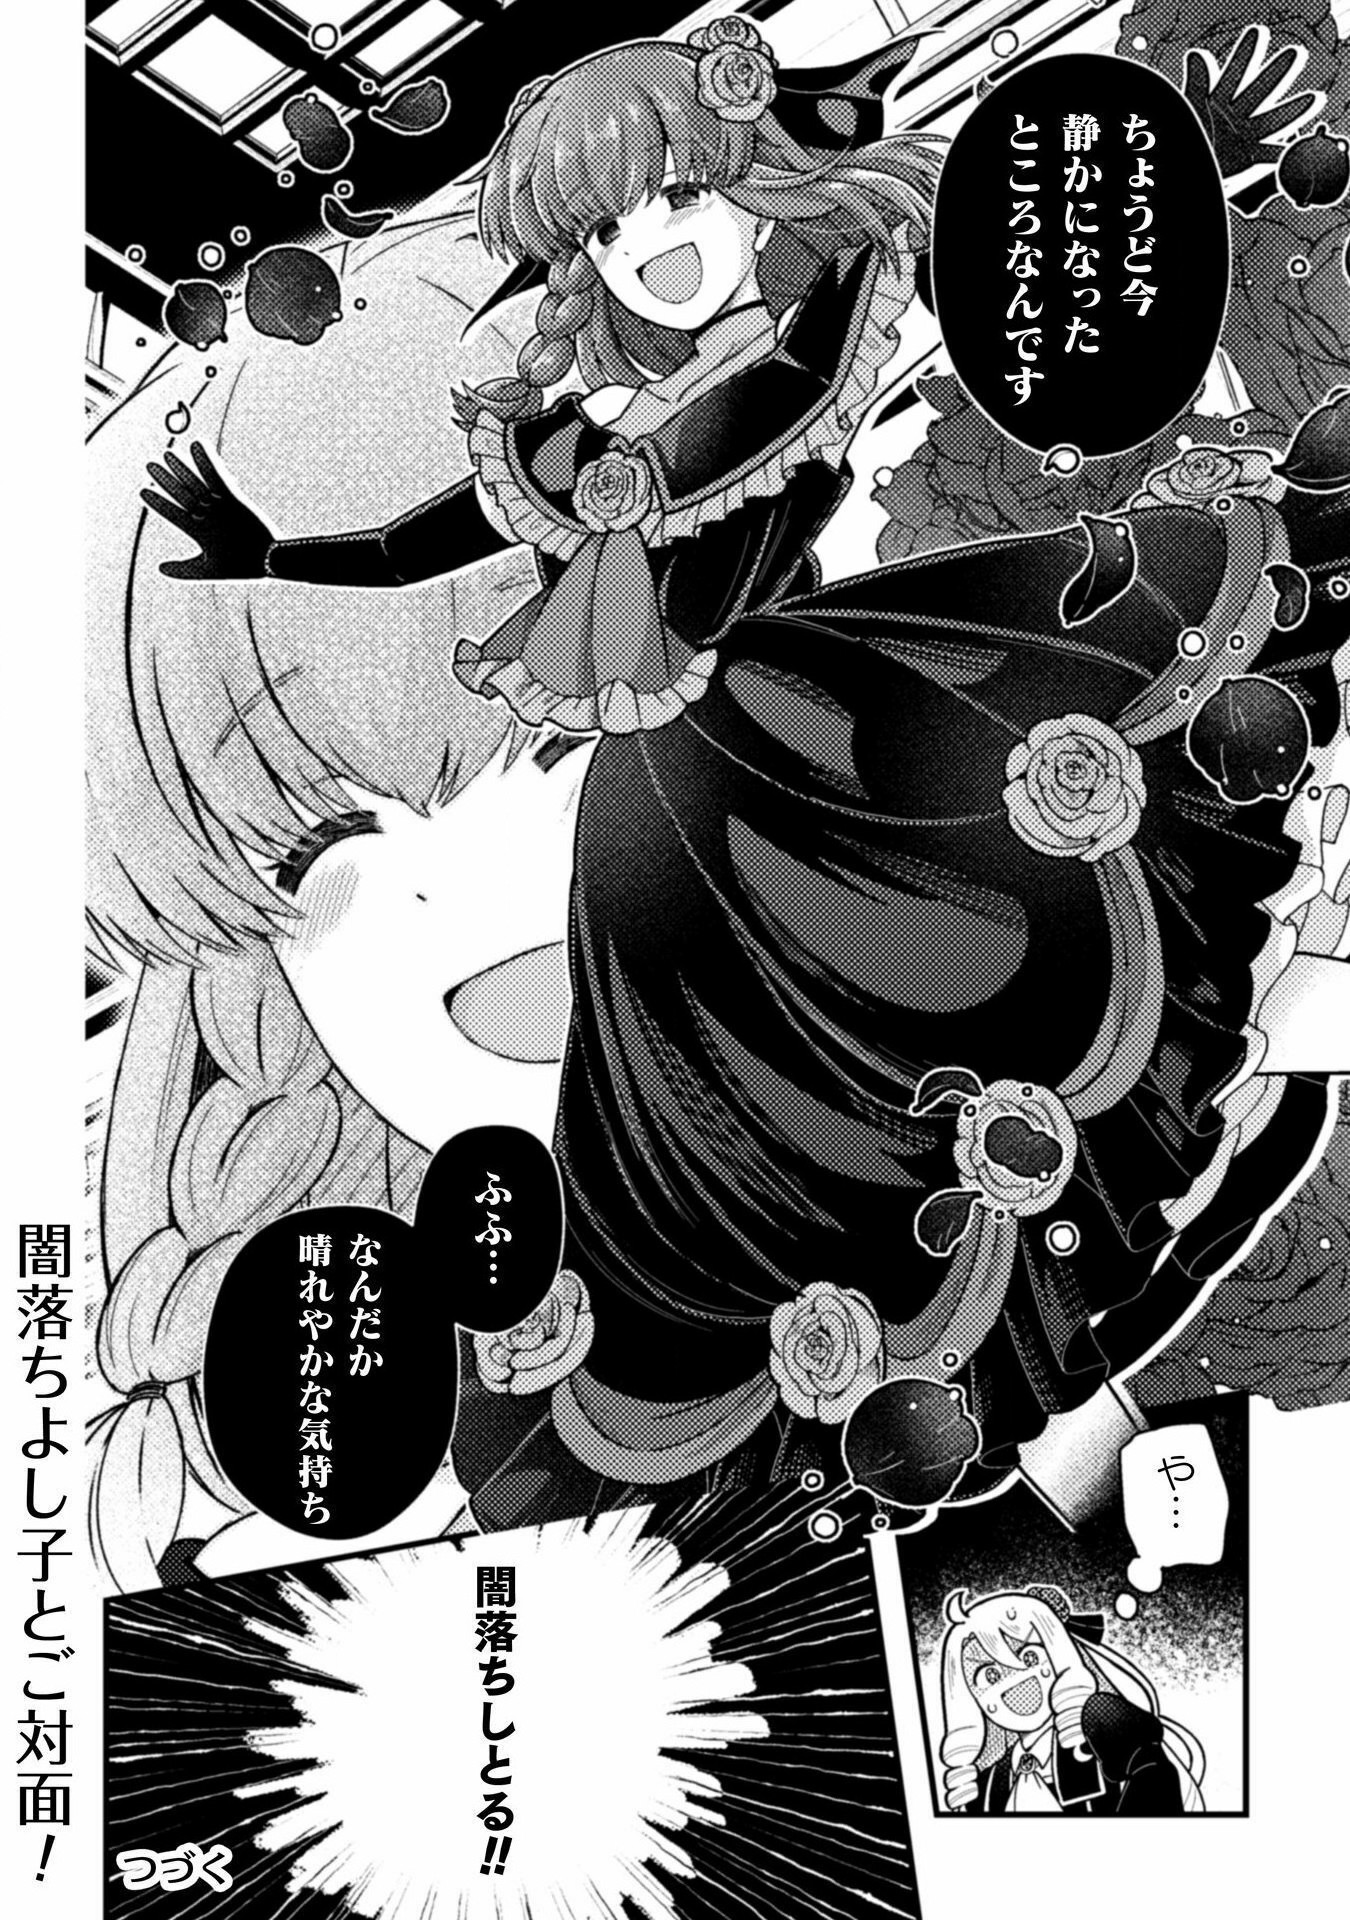 Otome Game no Akuyaku Reijou ni Tensei shitakedo Follower ga Fukyoushiteta Chisiki shikanai - Chapter 21 - Page 32